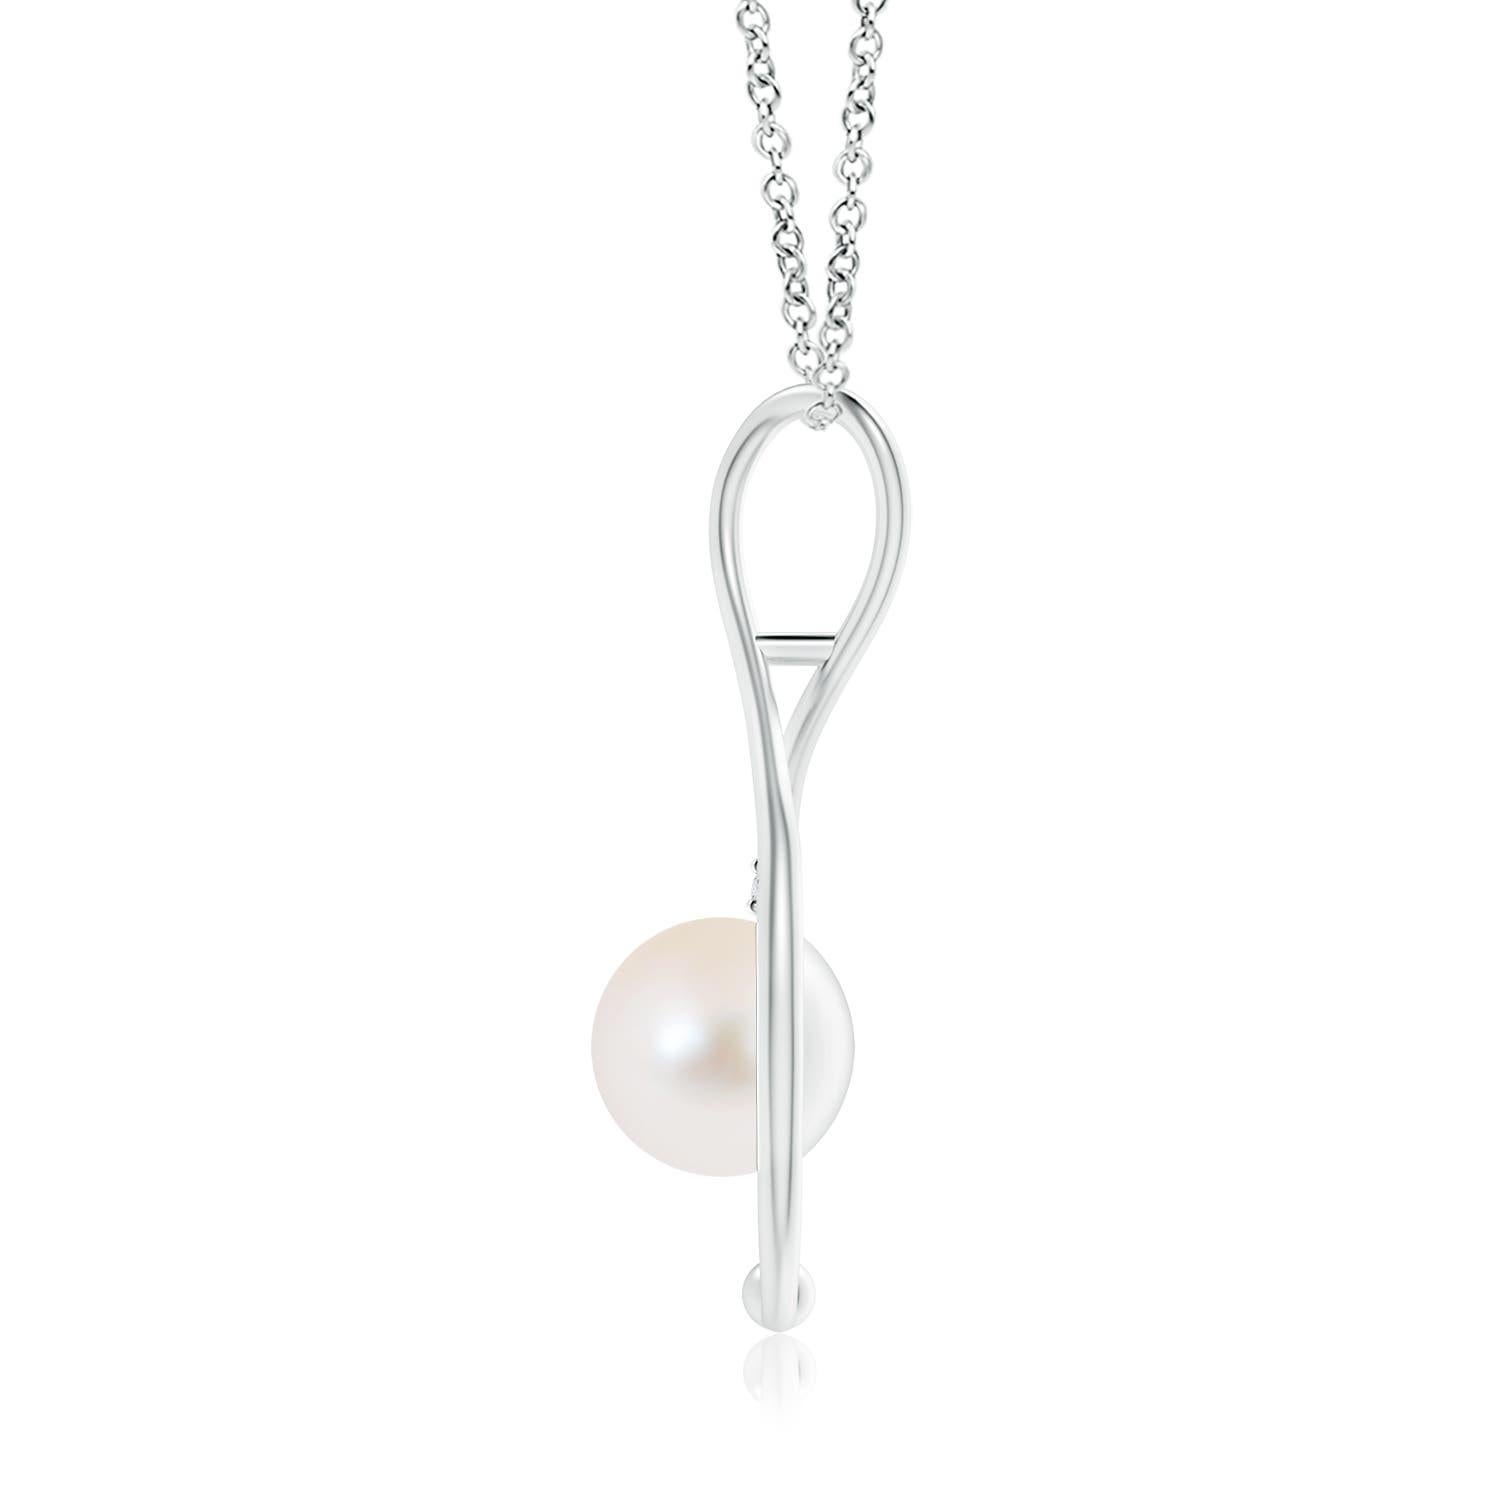 Classique moderne, ce collier infini en perles en or blanc 14 carats est une belle interprétation du populaire symbole de l'infini. La boucle à l'infini câline délicatement la perle de culture d'eau douce ronde pour évoquer un sentiment de